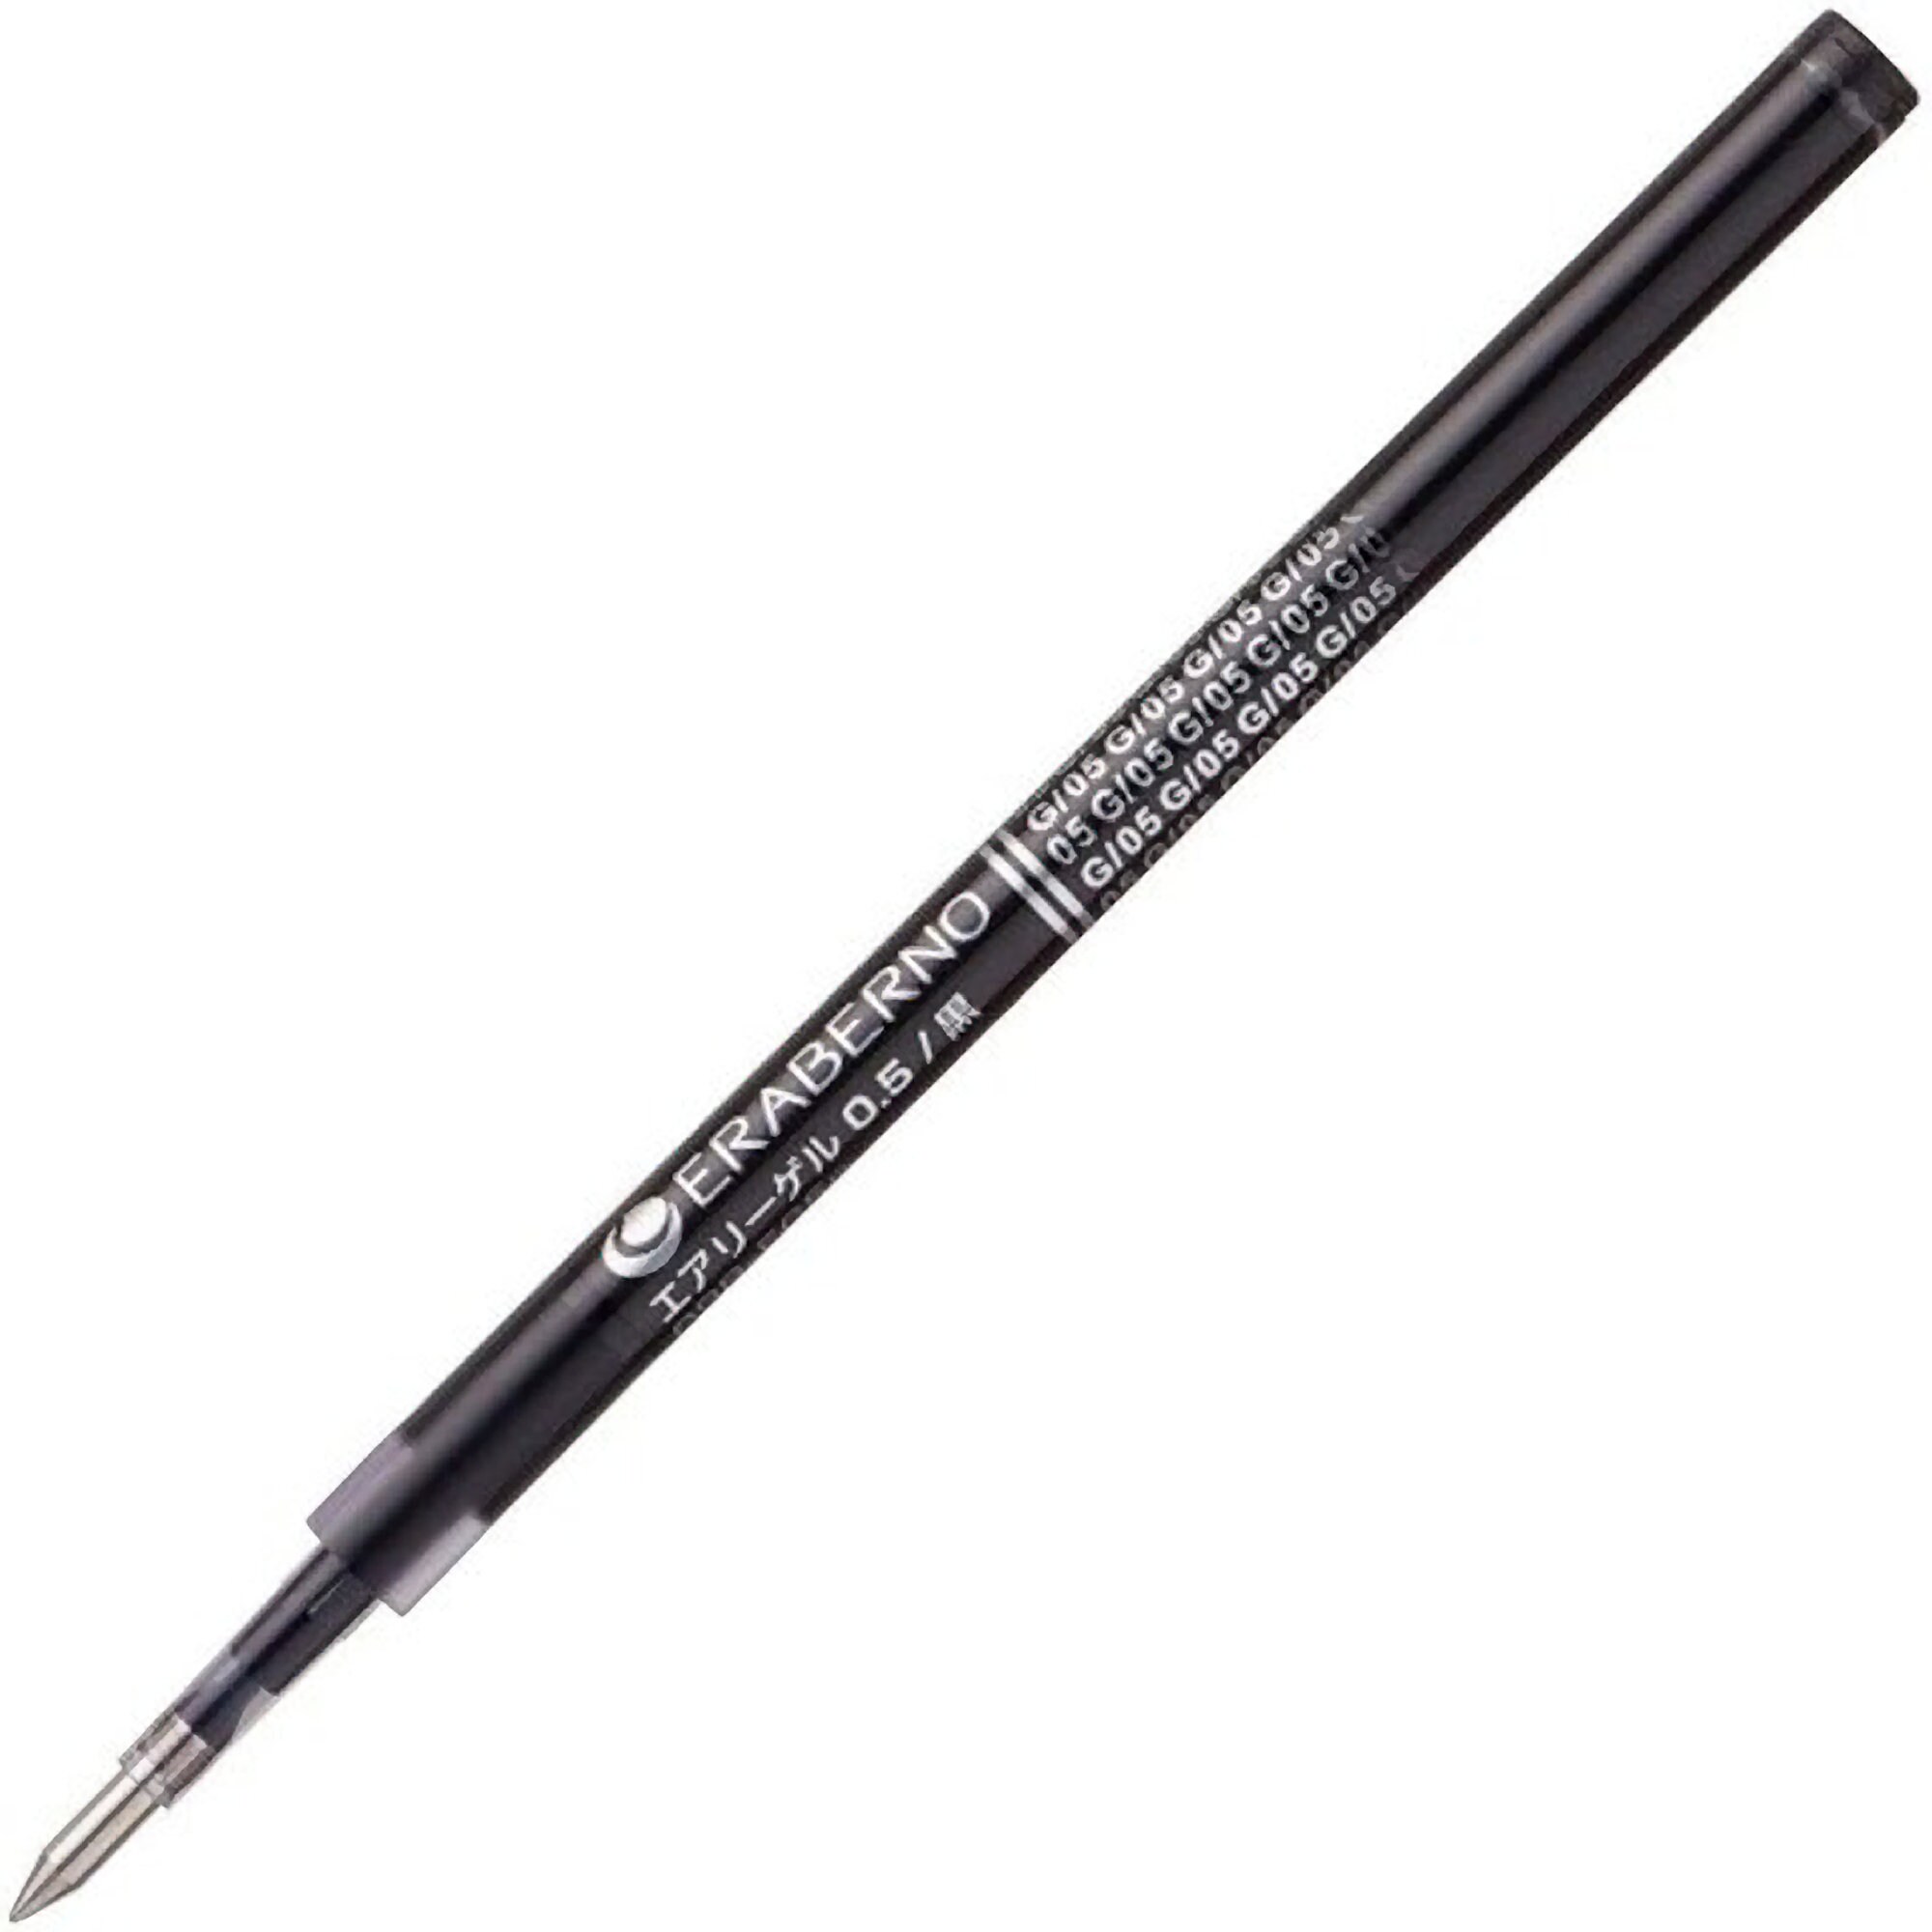 SKIN COLOR SET Languo Color Gel 6 Pen Set 0.6mm Black Out Planning Pen Set  Fine Point Set 9 Pens 